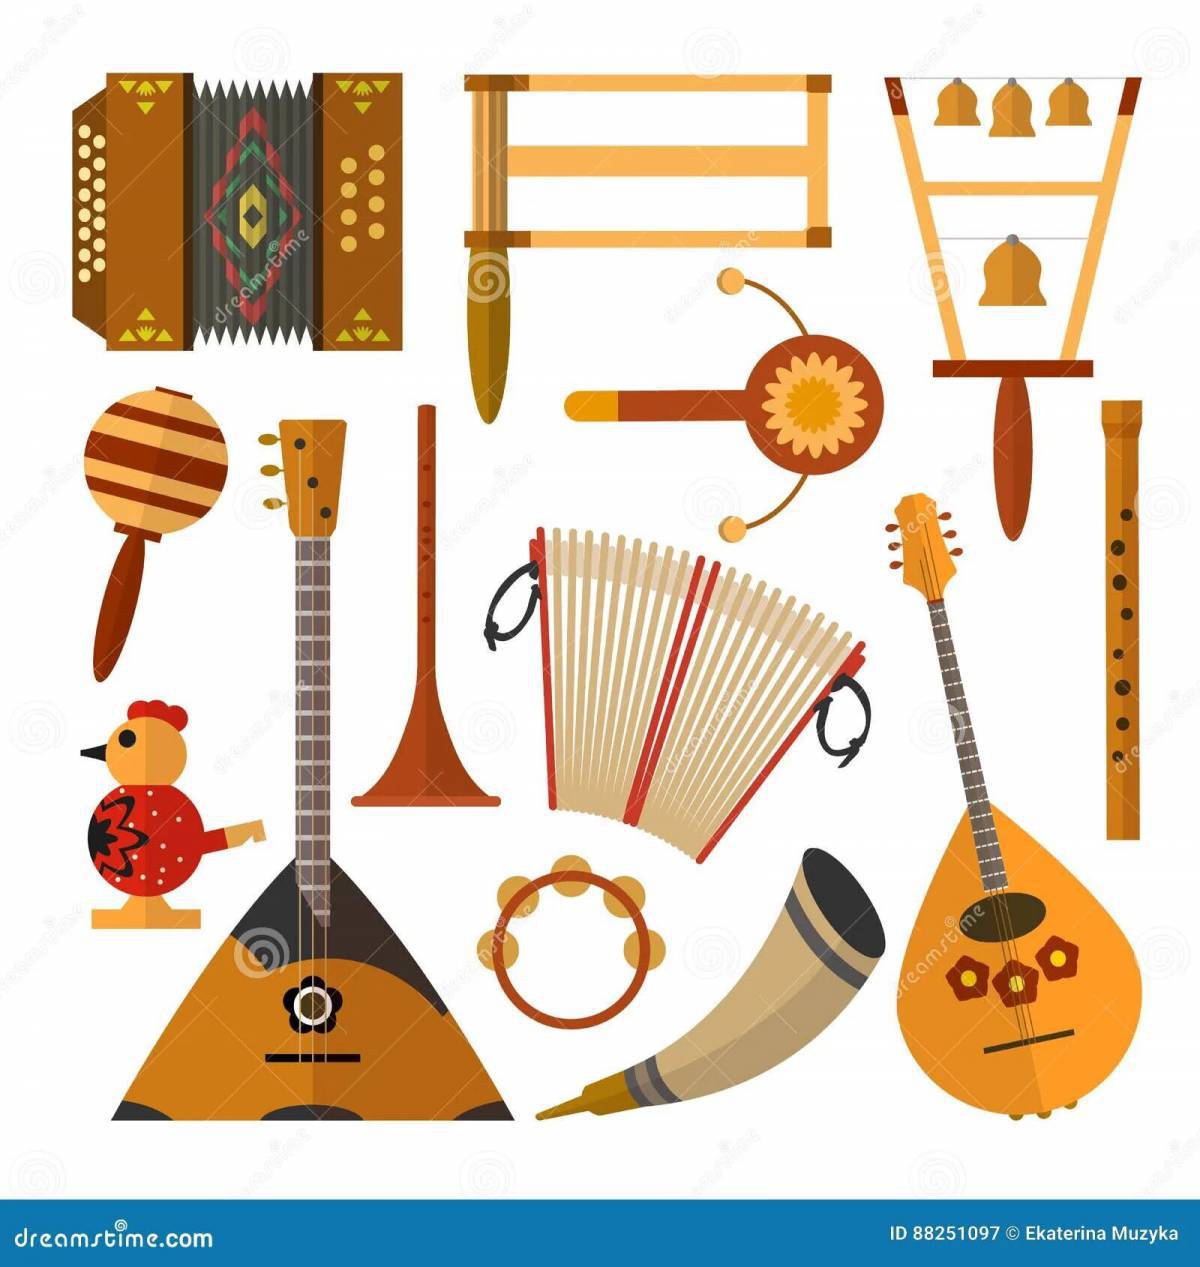 Русские народные инструменты для детей с названиями #12